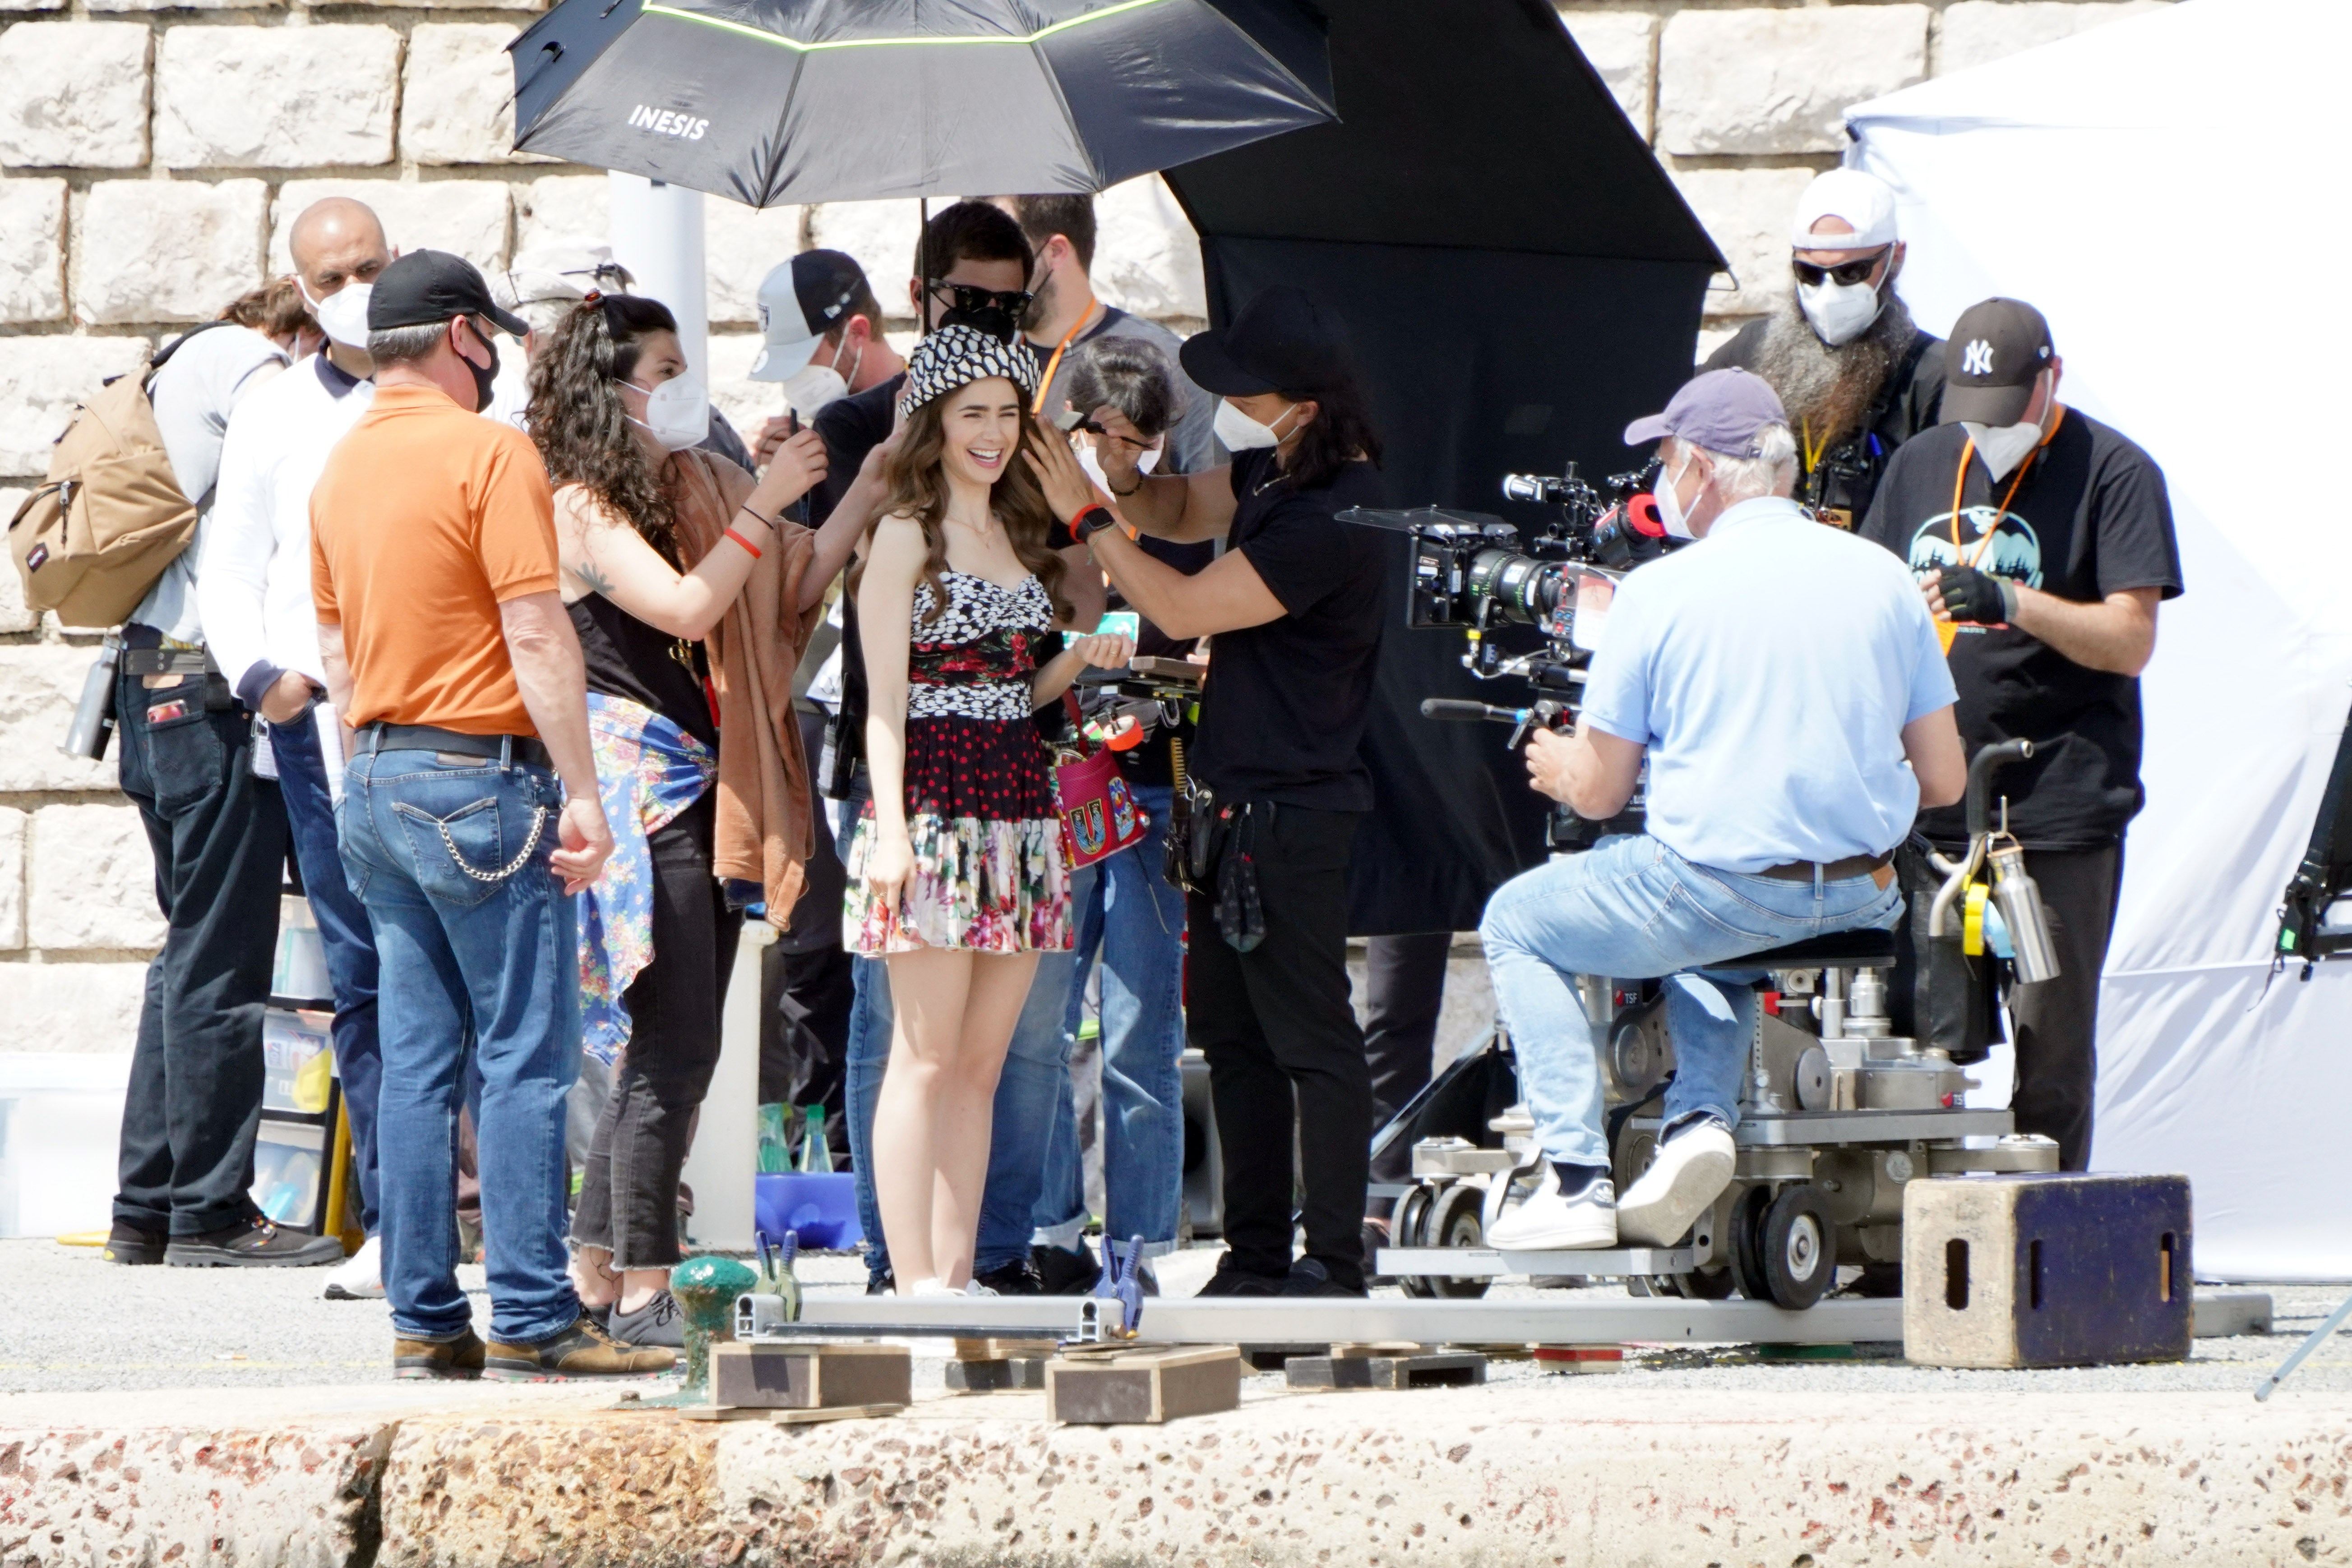 Emily in Paris Season 2 Filming in St. Tropez